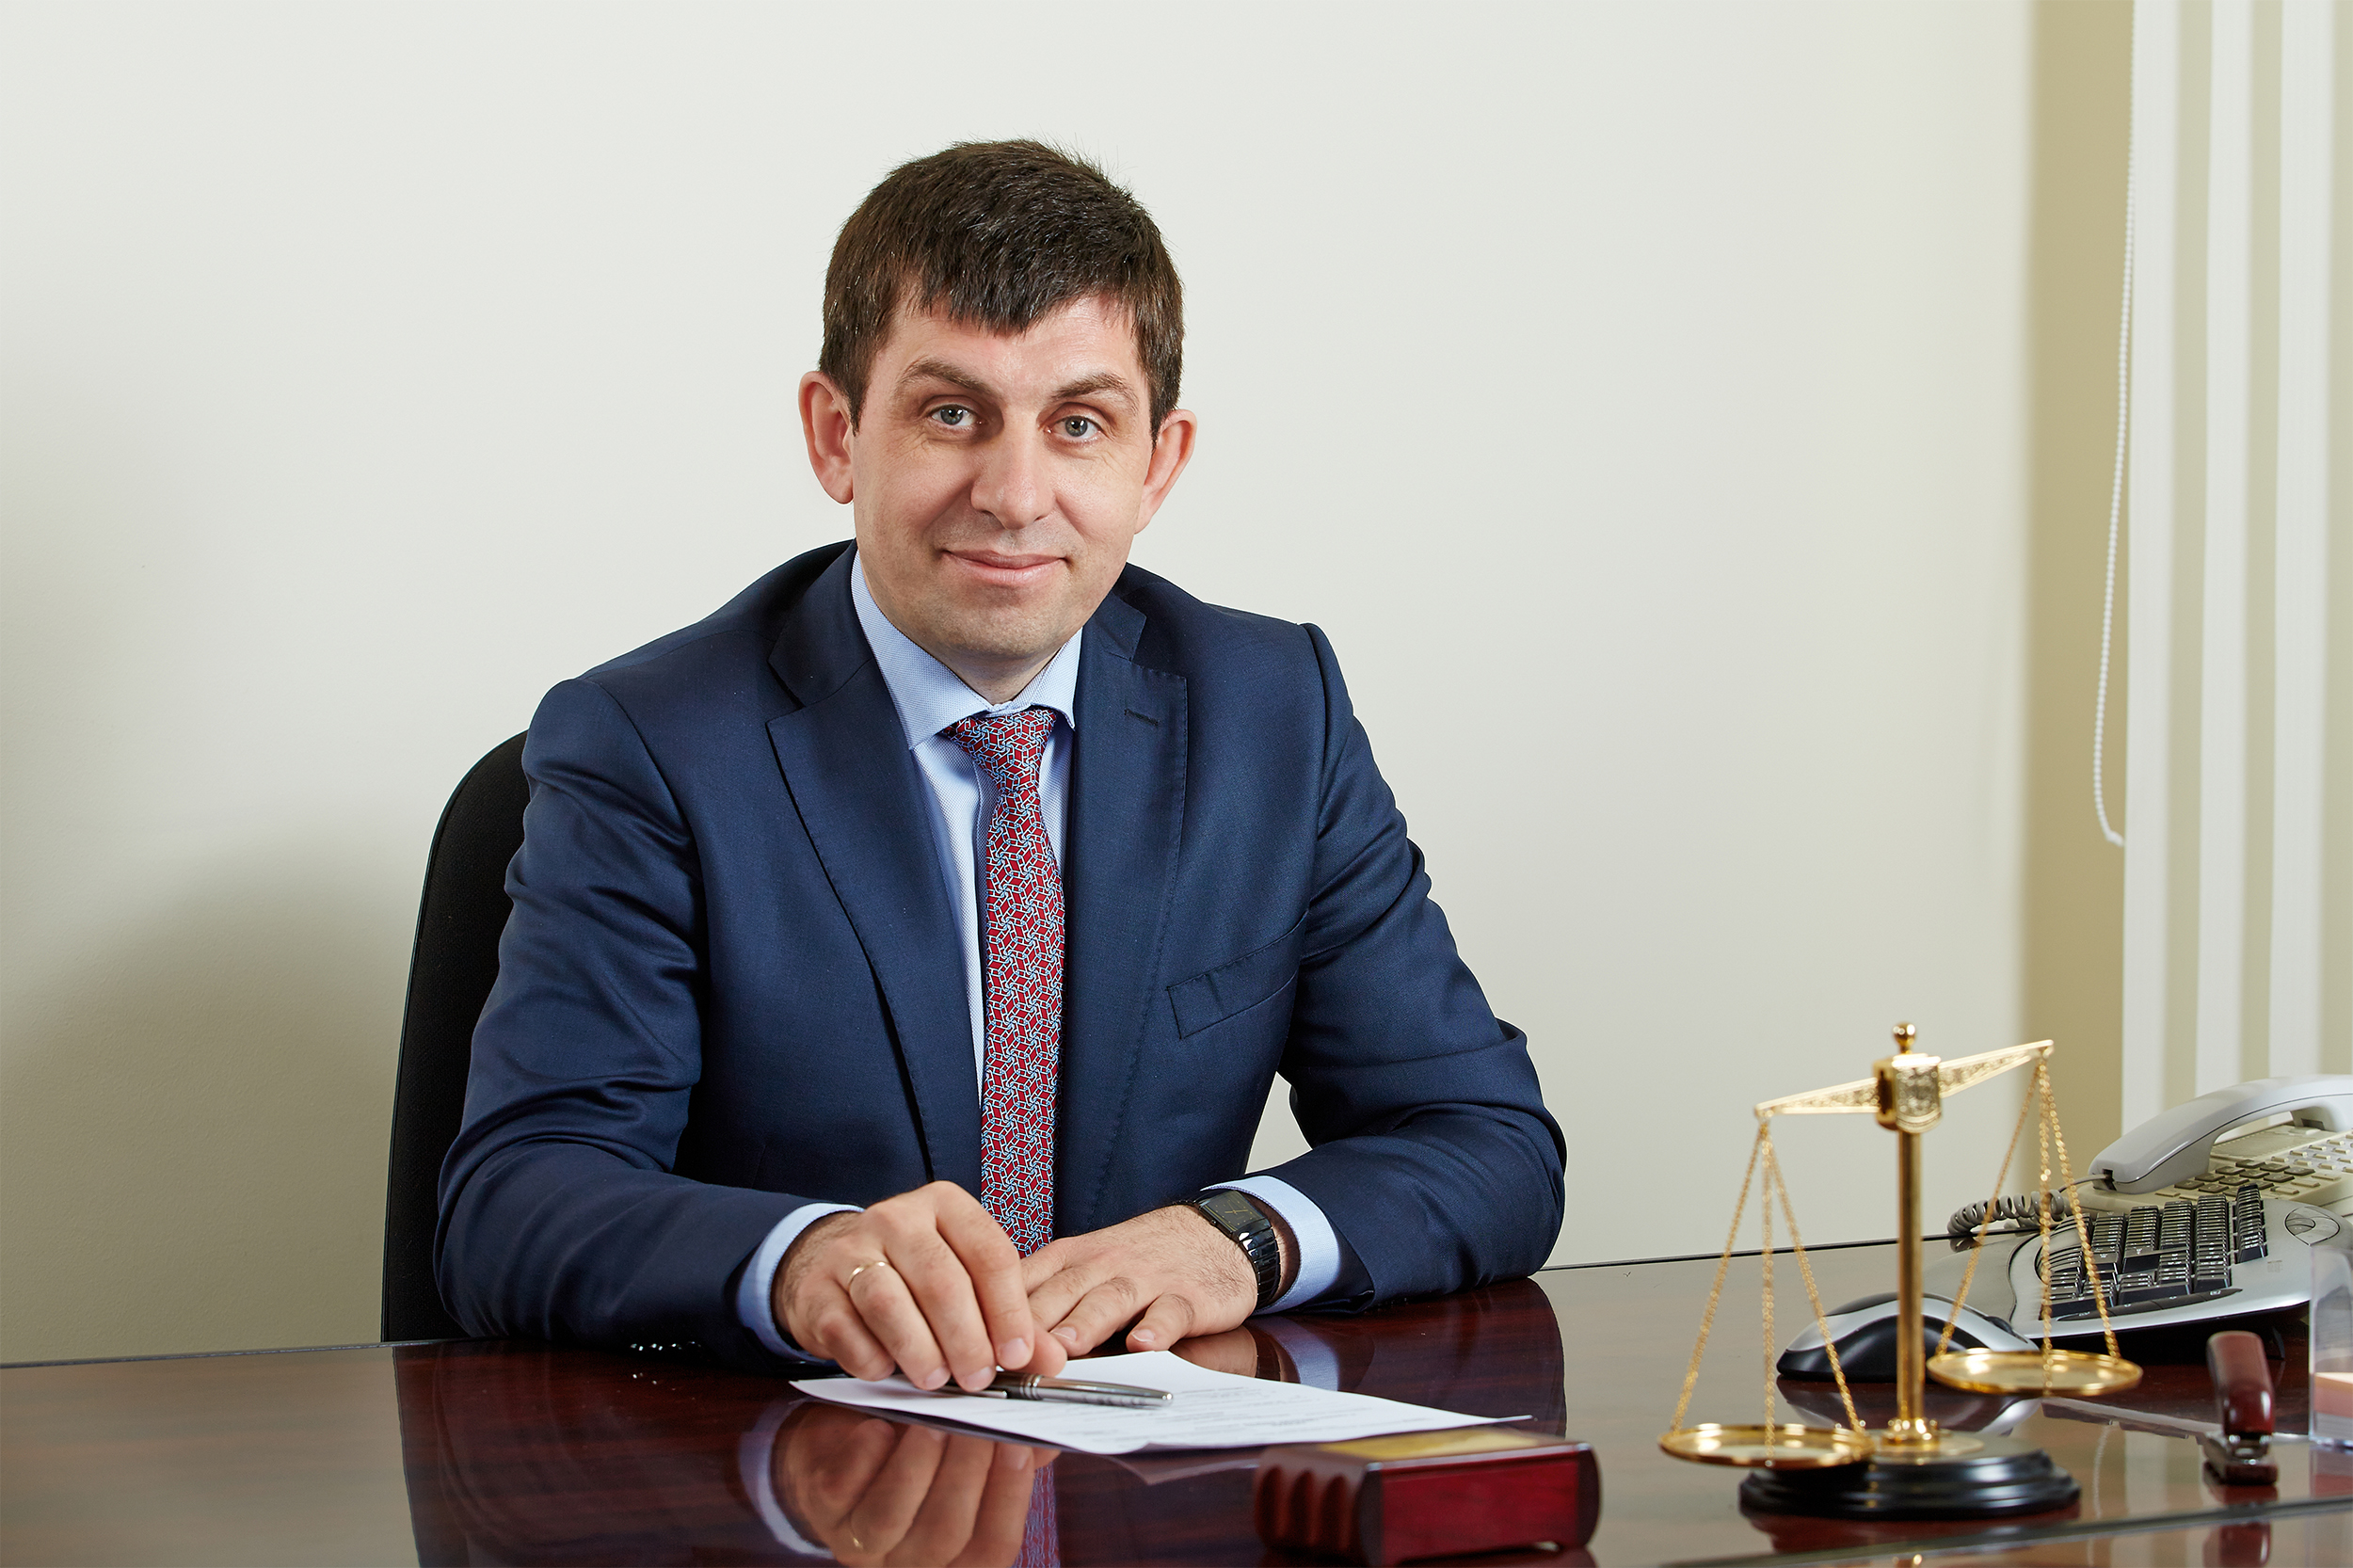 Сергей Мурашов, генеральный директор Системы бренд-контроля DAT